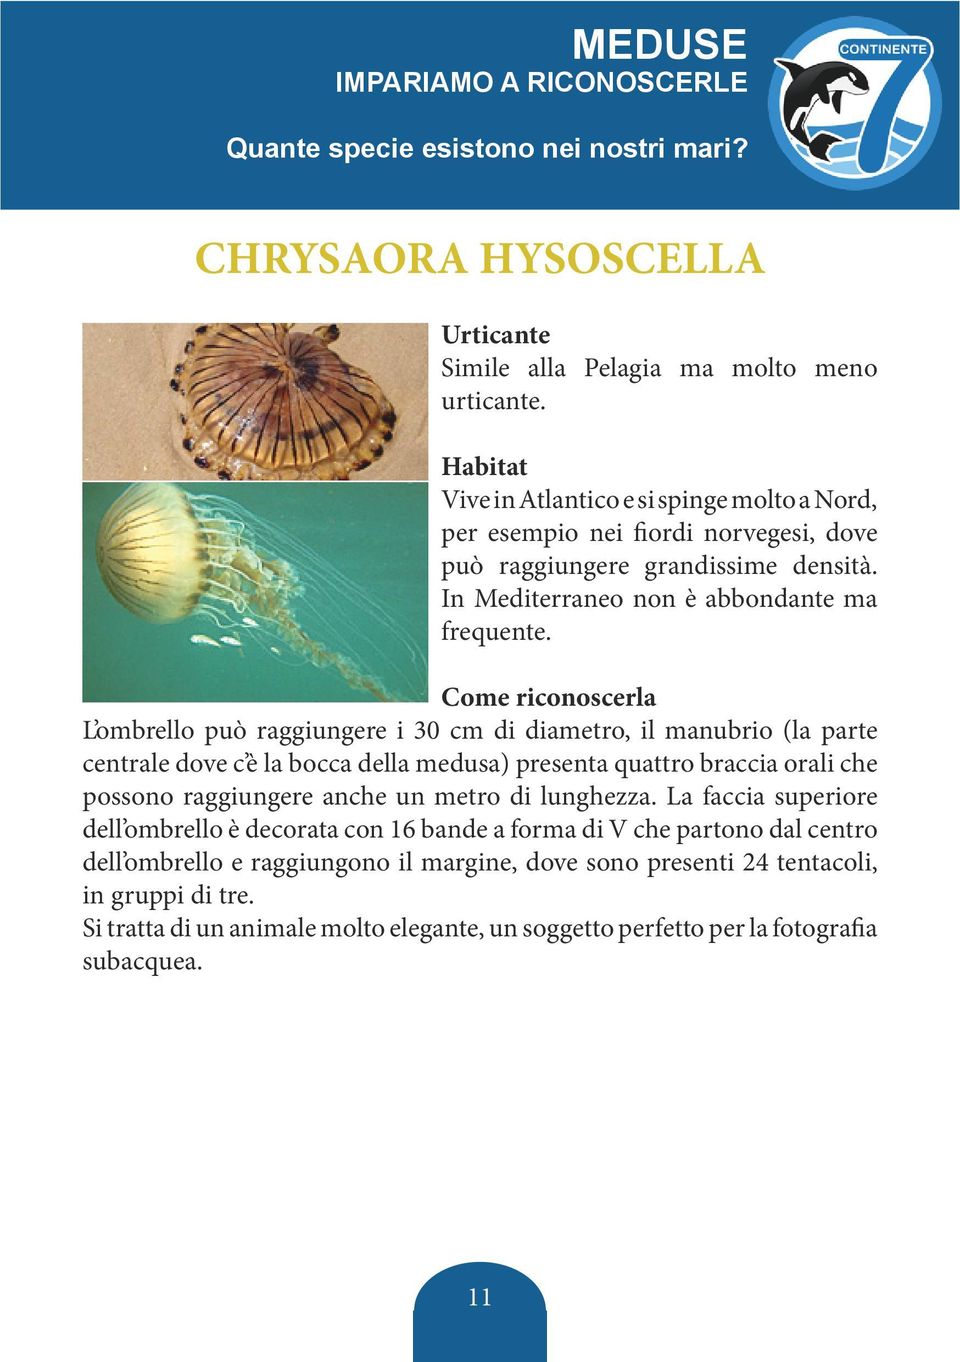 L ombrello può raggiungere i 30 cm di diametro, il manubrio (la parte centrale dove c è la bocca della medusa) presenta quattro braccia orali che possono raggiungere anche un